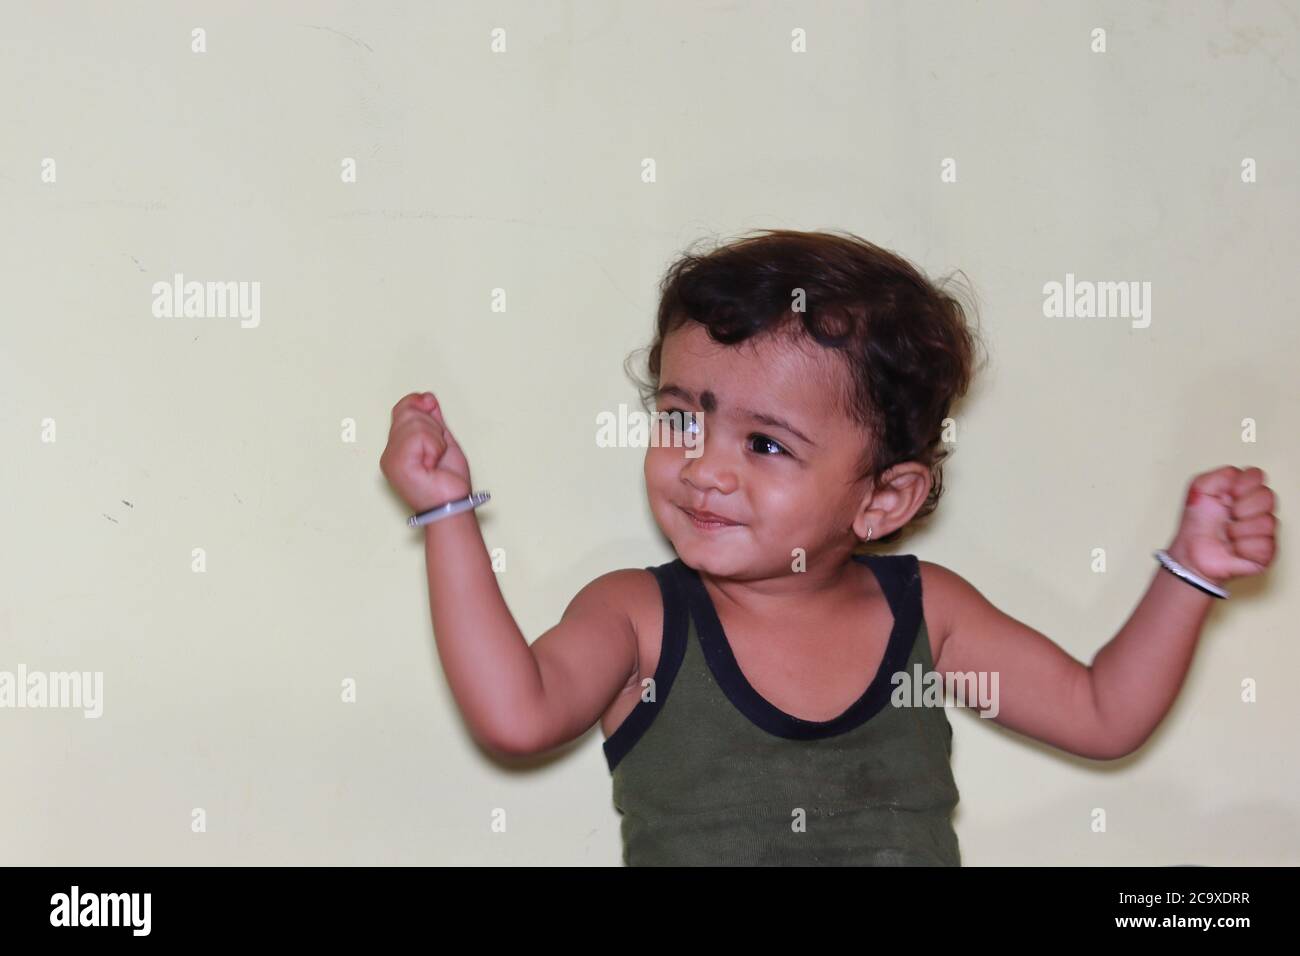 Drinnen Baby schütteln beide Hände, glücklich Kind Porträt, Nahaufnahme des Kindes Bild Stockfoto